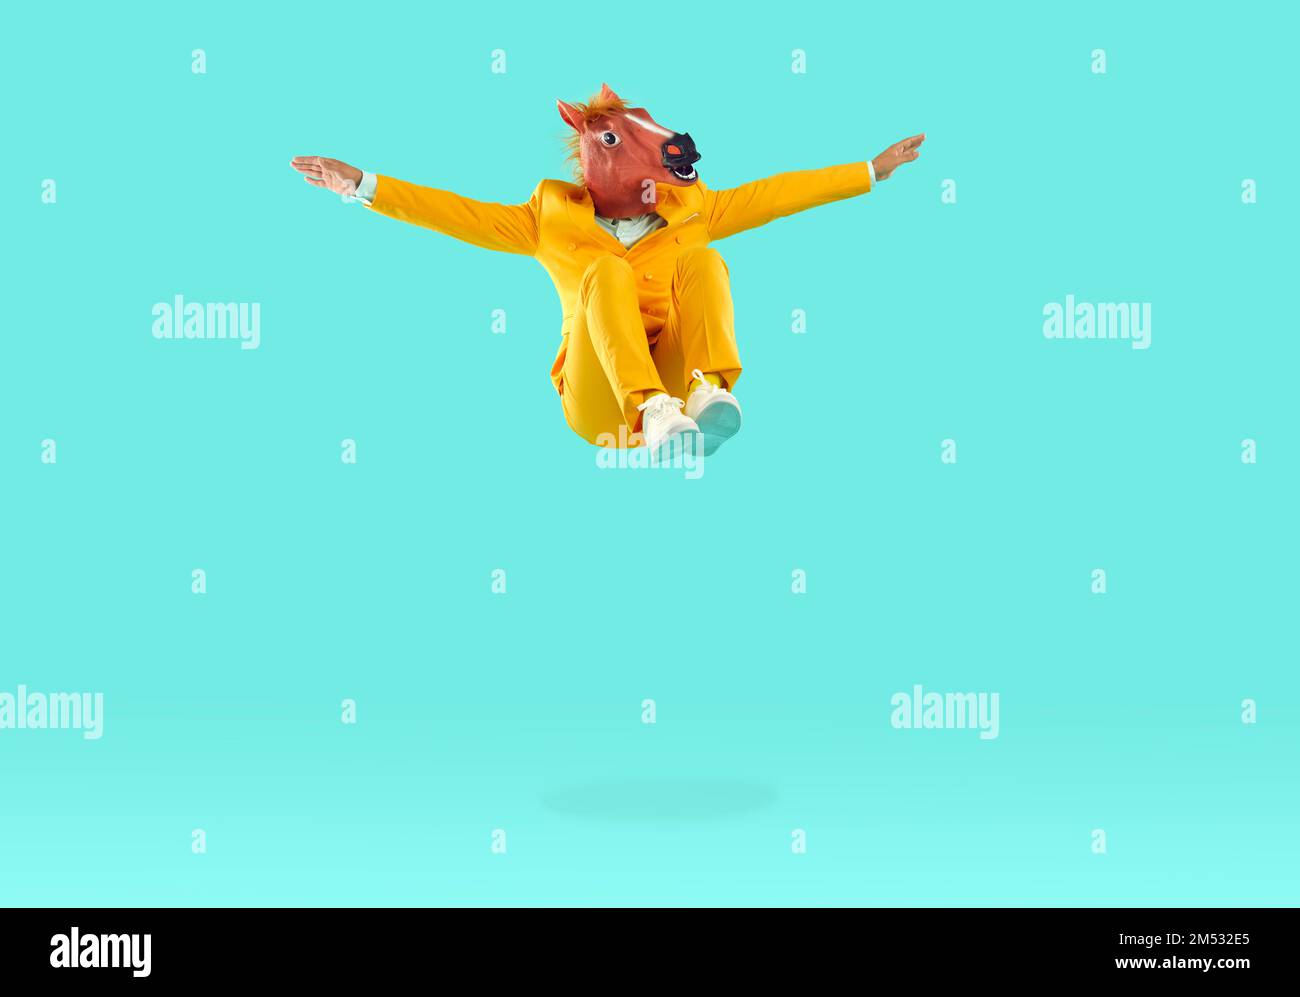 Mann mit Dinosaurierkopf, der auf gelbem Hintergrund in die Luft springt Stockfoto